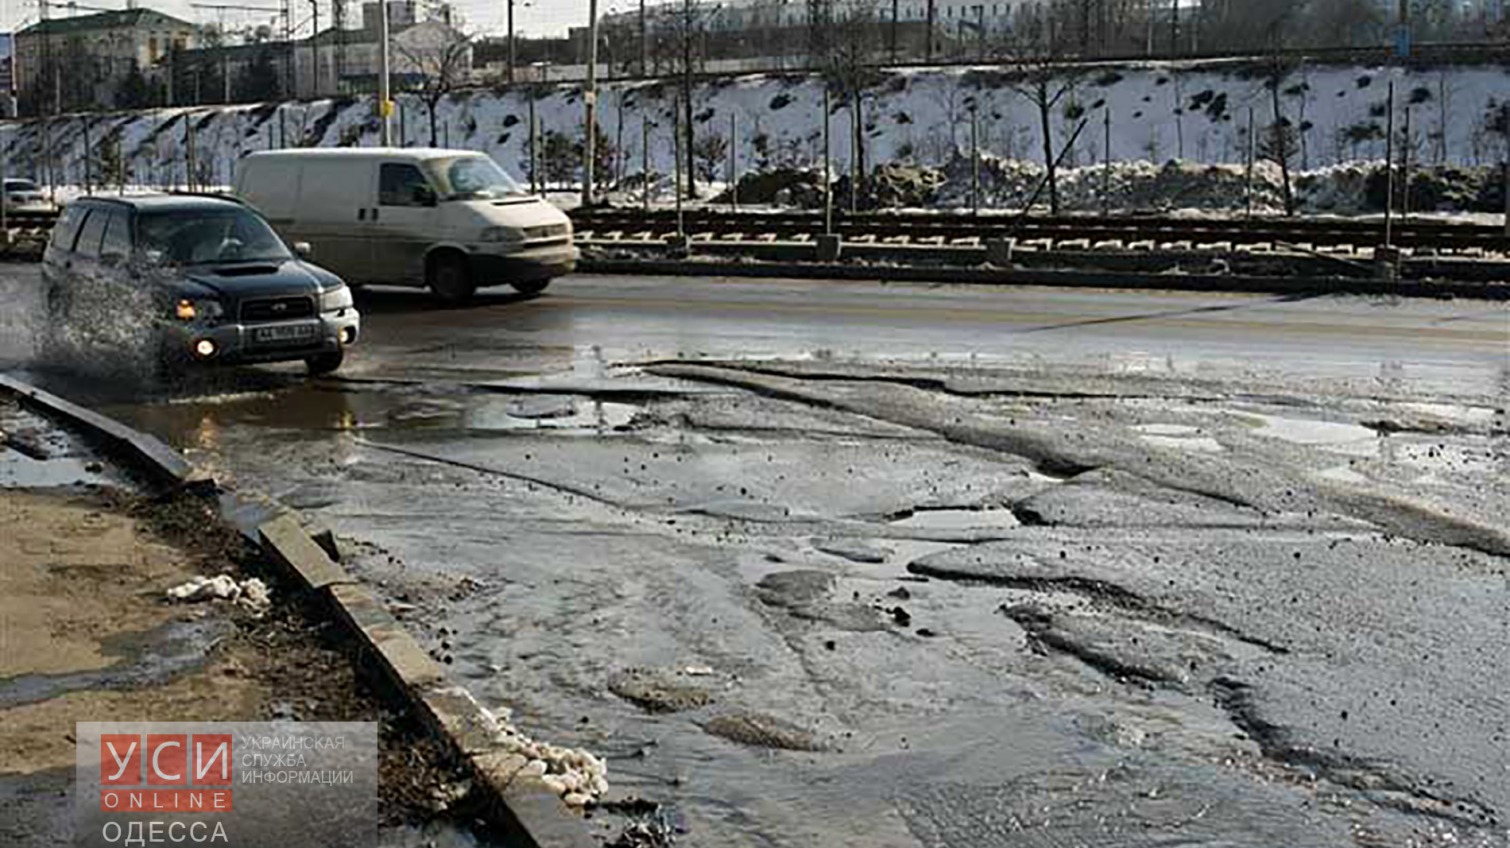 Украинские программисты придумали, как уберечь одесских водителей от ям на дорогах «фото»